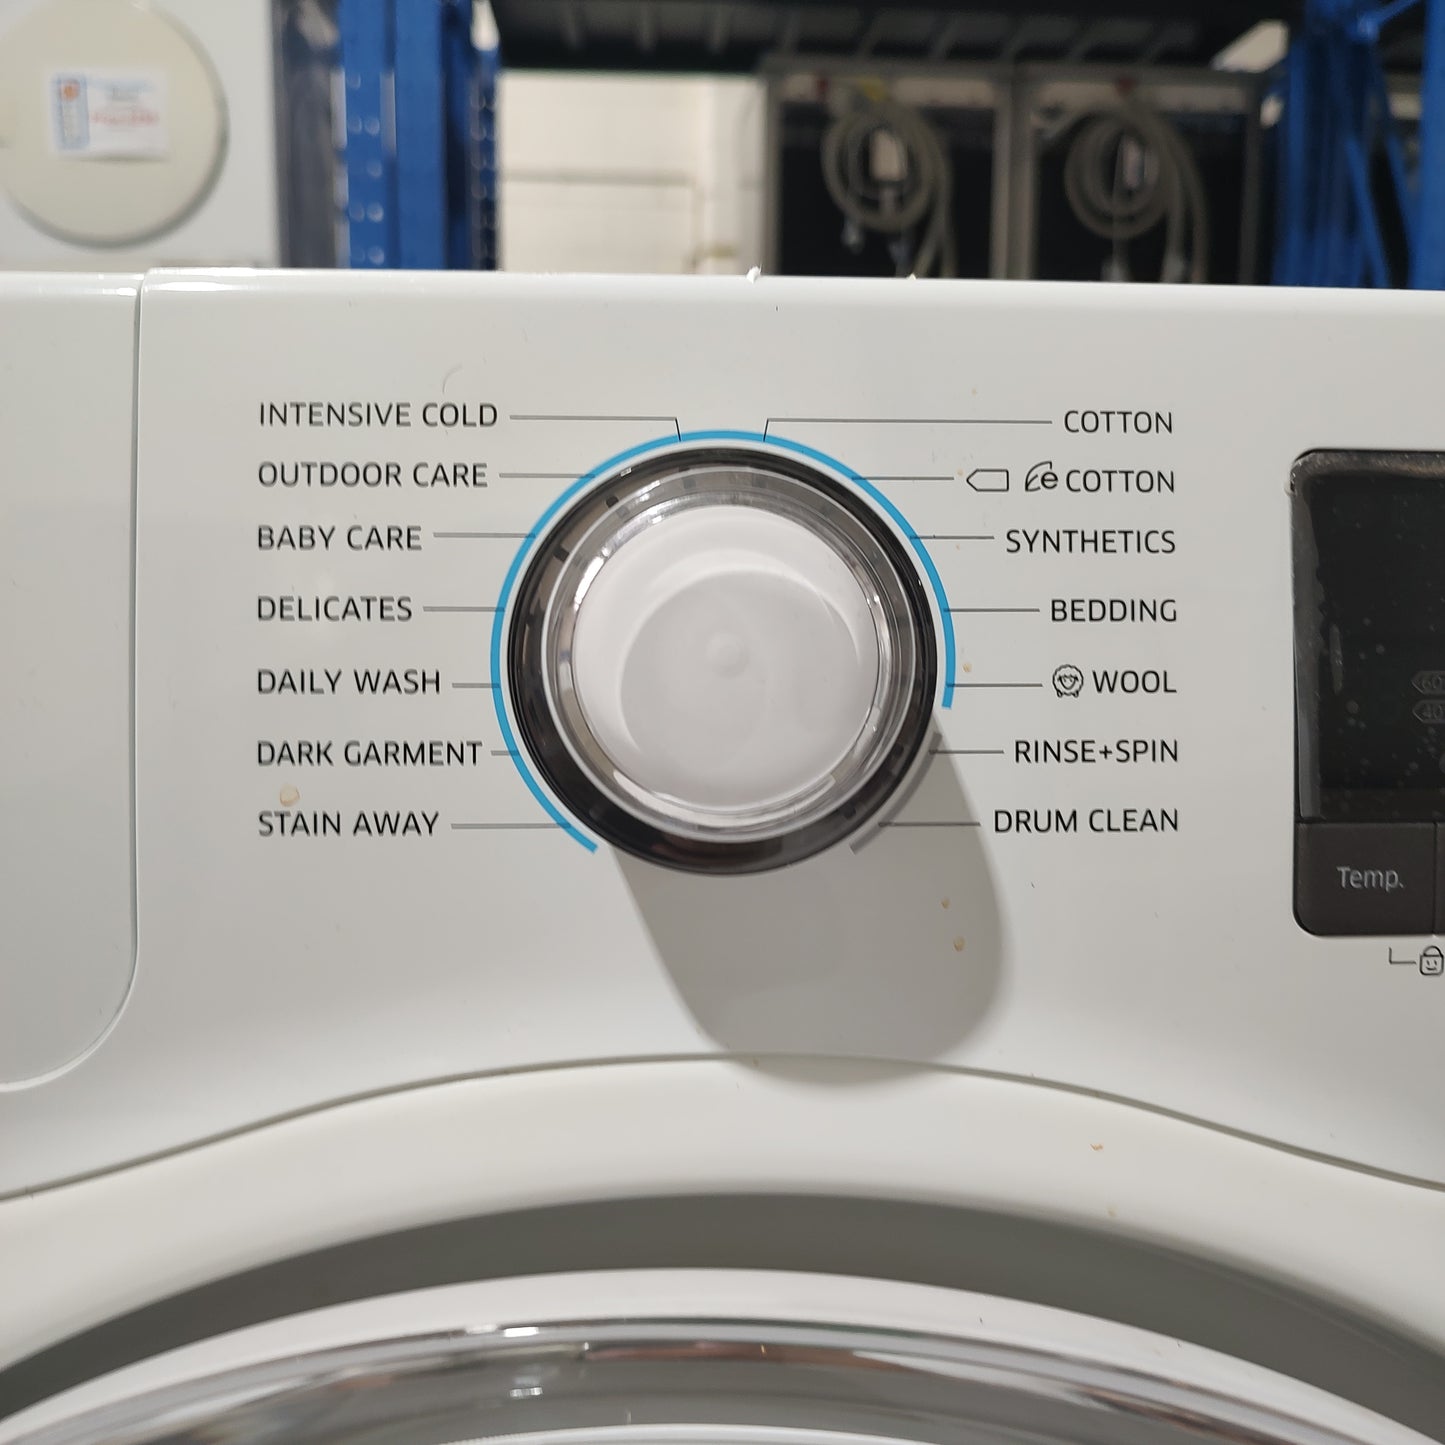 Samsung WW75H5400EW 7.5kg Front Load Washing Machine